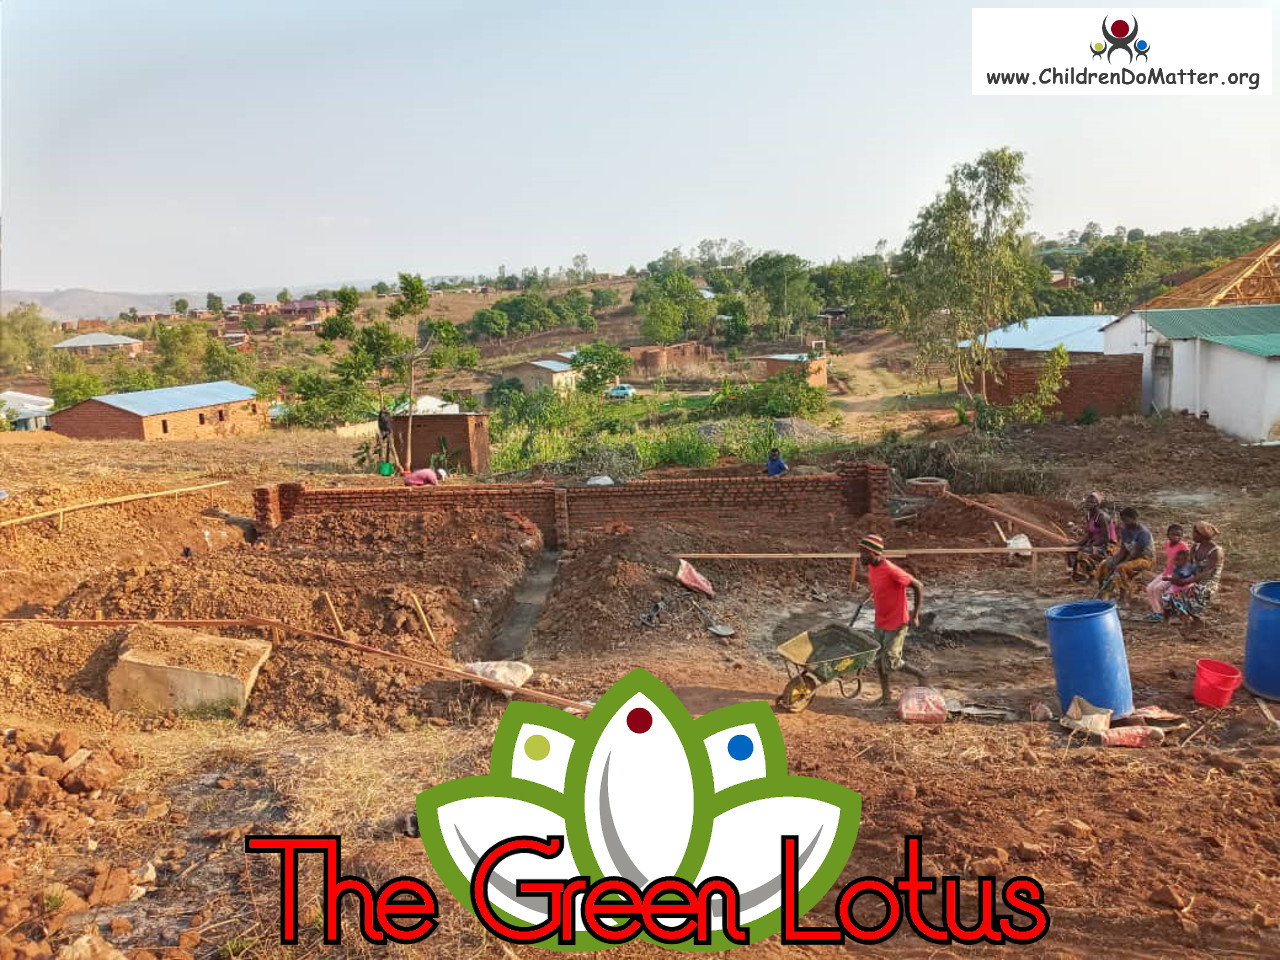 costruzione dell'orfanotrofio casa di accoglienza the green lotus a blantyre malawi - children do matter - 2